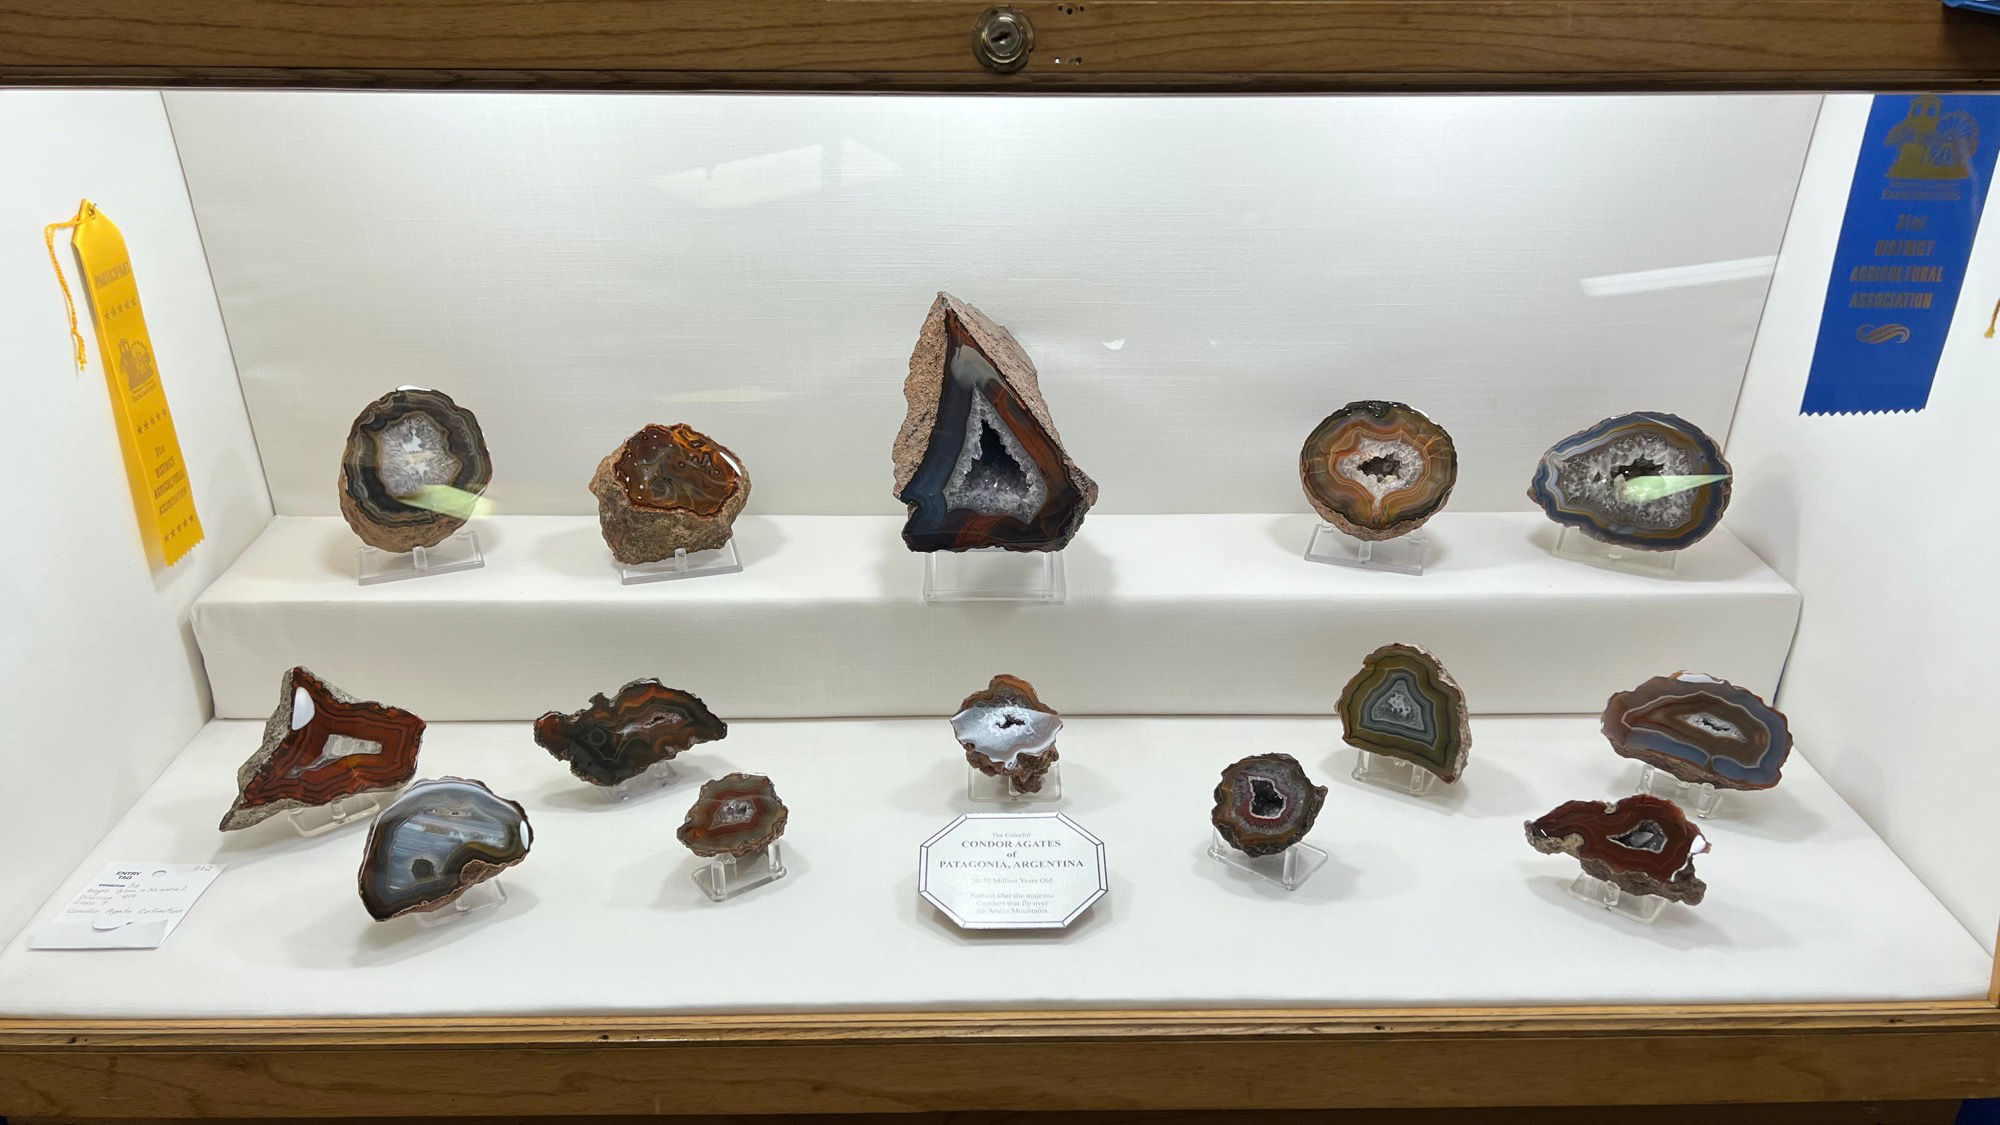 Gems & Minerals Condoragates of Patagonia